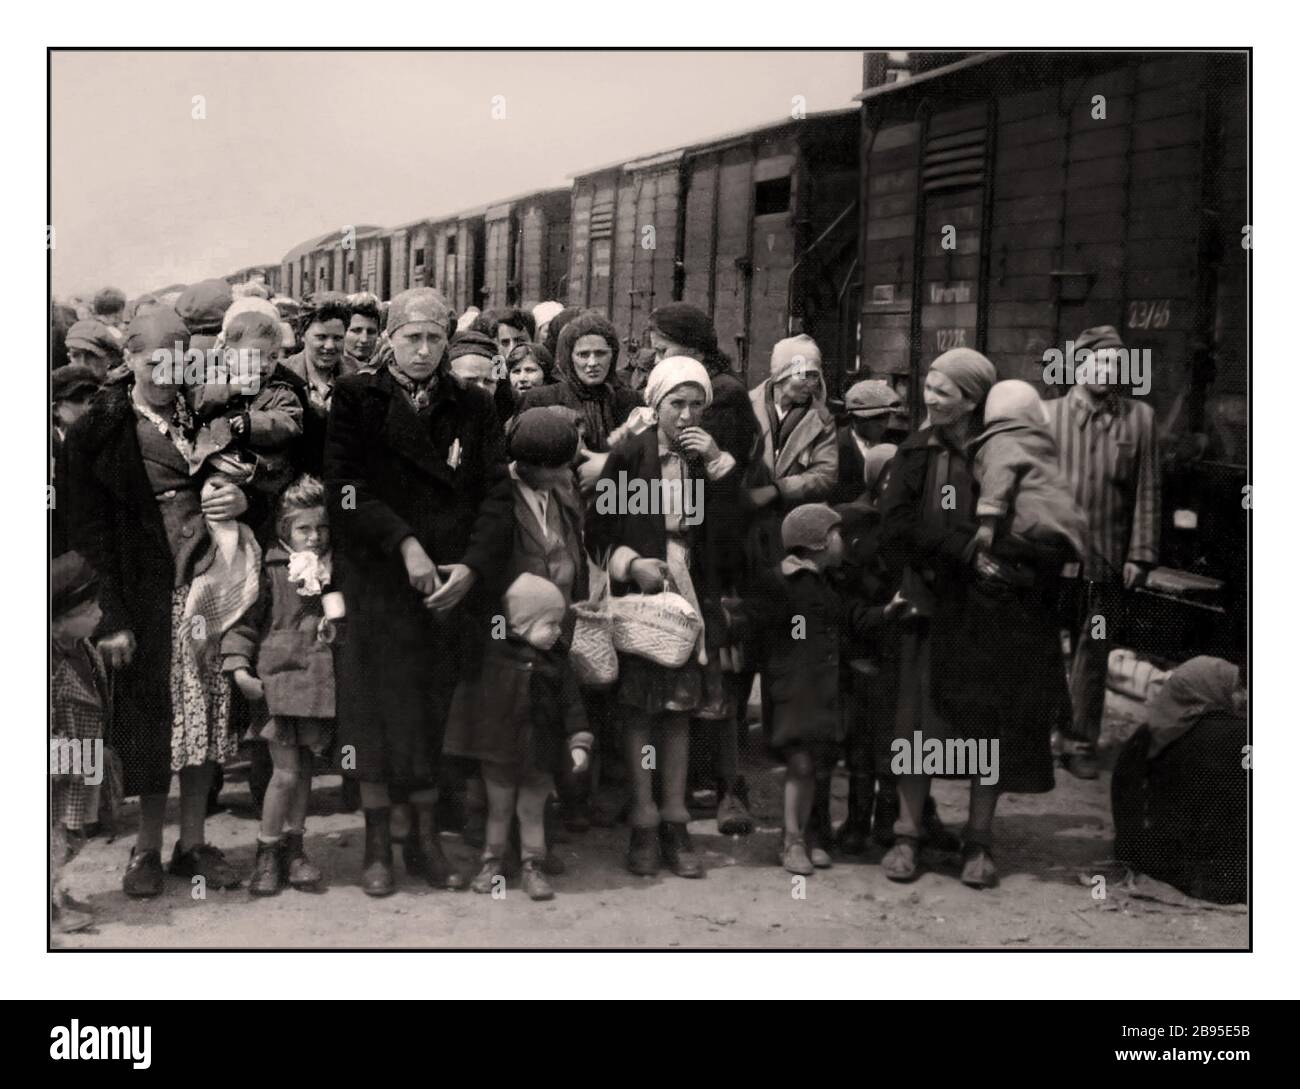 Arrivi Auschwitz-Birkenau. Donne e bambini ebrei alcuni indossano stelle gialle designate dai nazisti arrivano a Auschwitz-Birkenau, un campo di concentramento nazista del WW2. I bambini ebrei erano il gruppo più grande deportato nel campo. Furono inviati insieme agli adulti, a partire dai primi mesi del 1942, come parte della “soluzione finale della questione ebraica” La distruzione totale della popolazione ebraica d'Europa...il campo di concentramento di Auschwitz era una rete di campi di concentramento e sterminio nazisti gestiti dal terzo Reich nelle aree polacche annesse dalla Germania nazista durante la seconda guerra mondiale Foto Stock